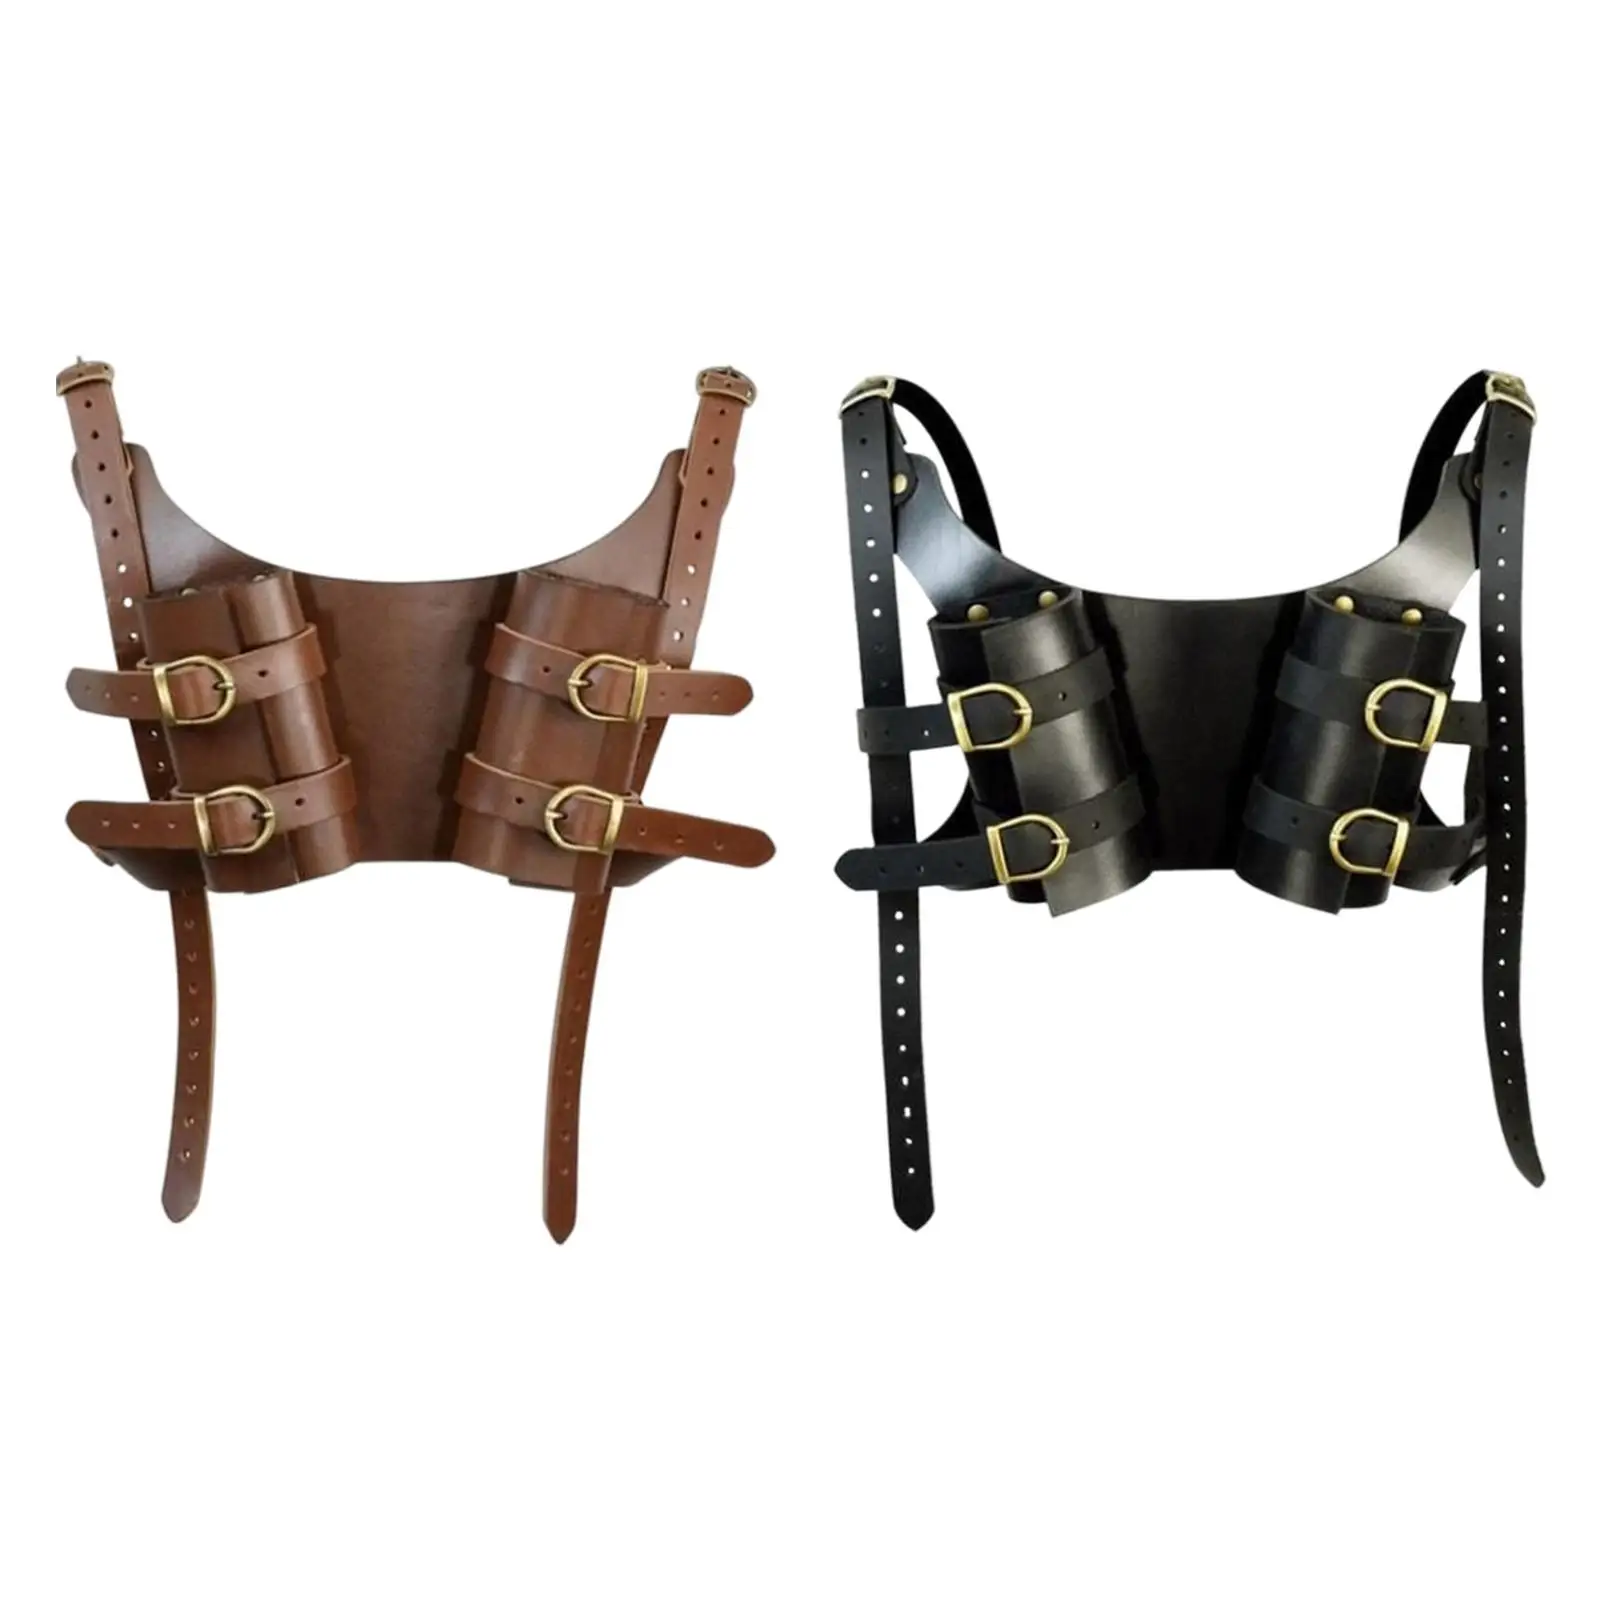 Double Medieval Shoulder Strap Shoulder Belt Adjustable Sheath for Costume